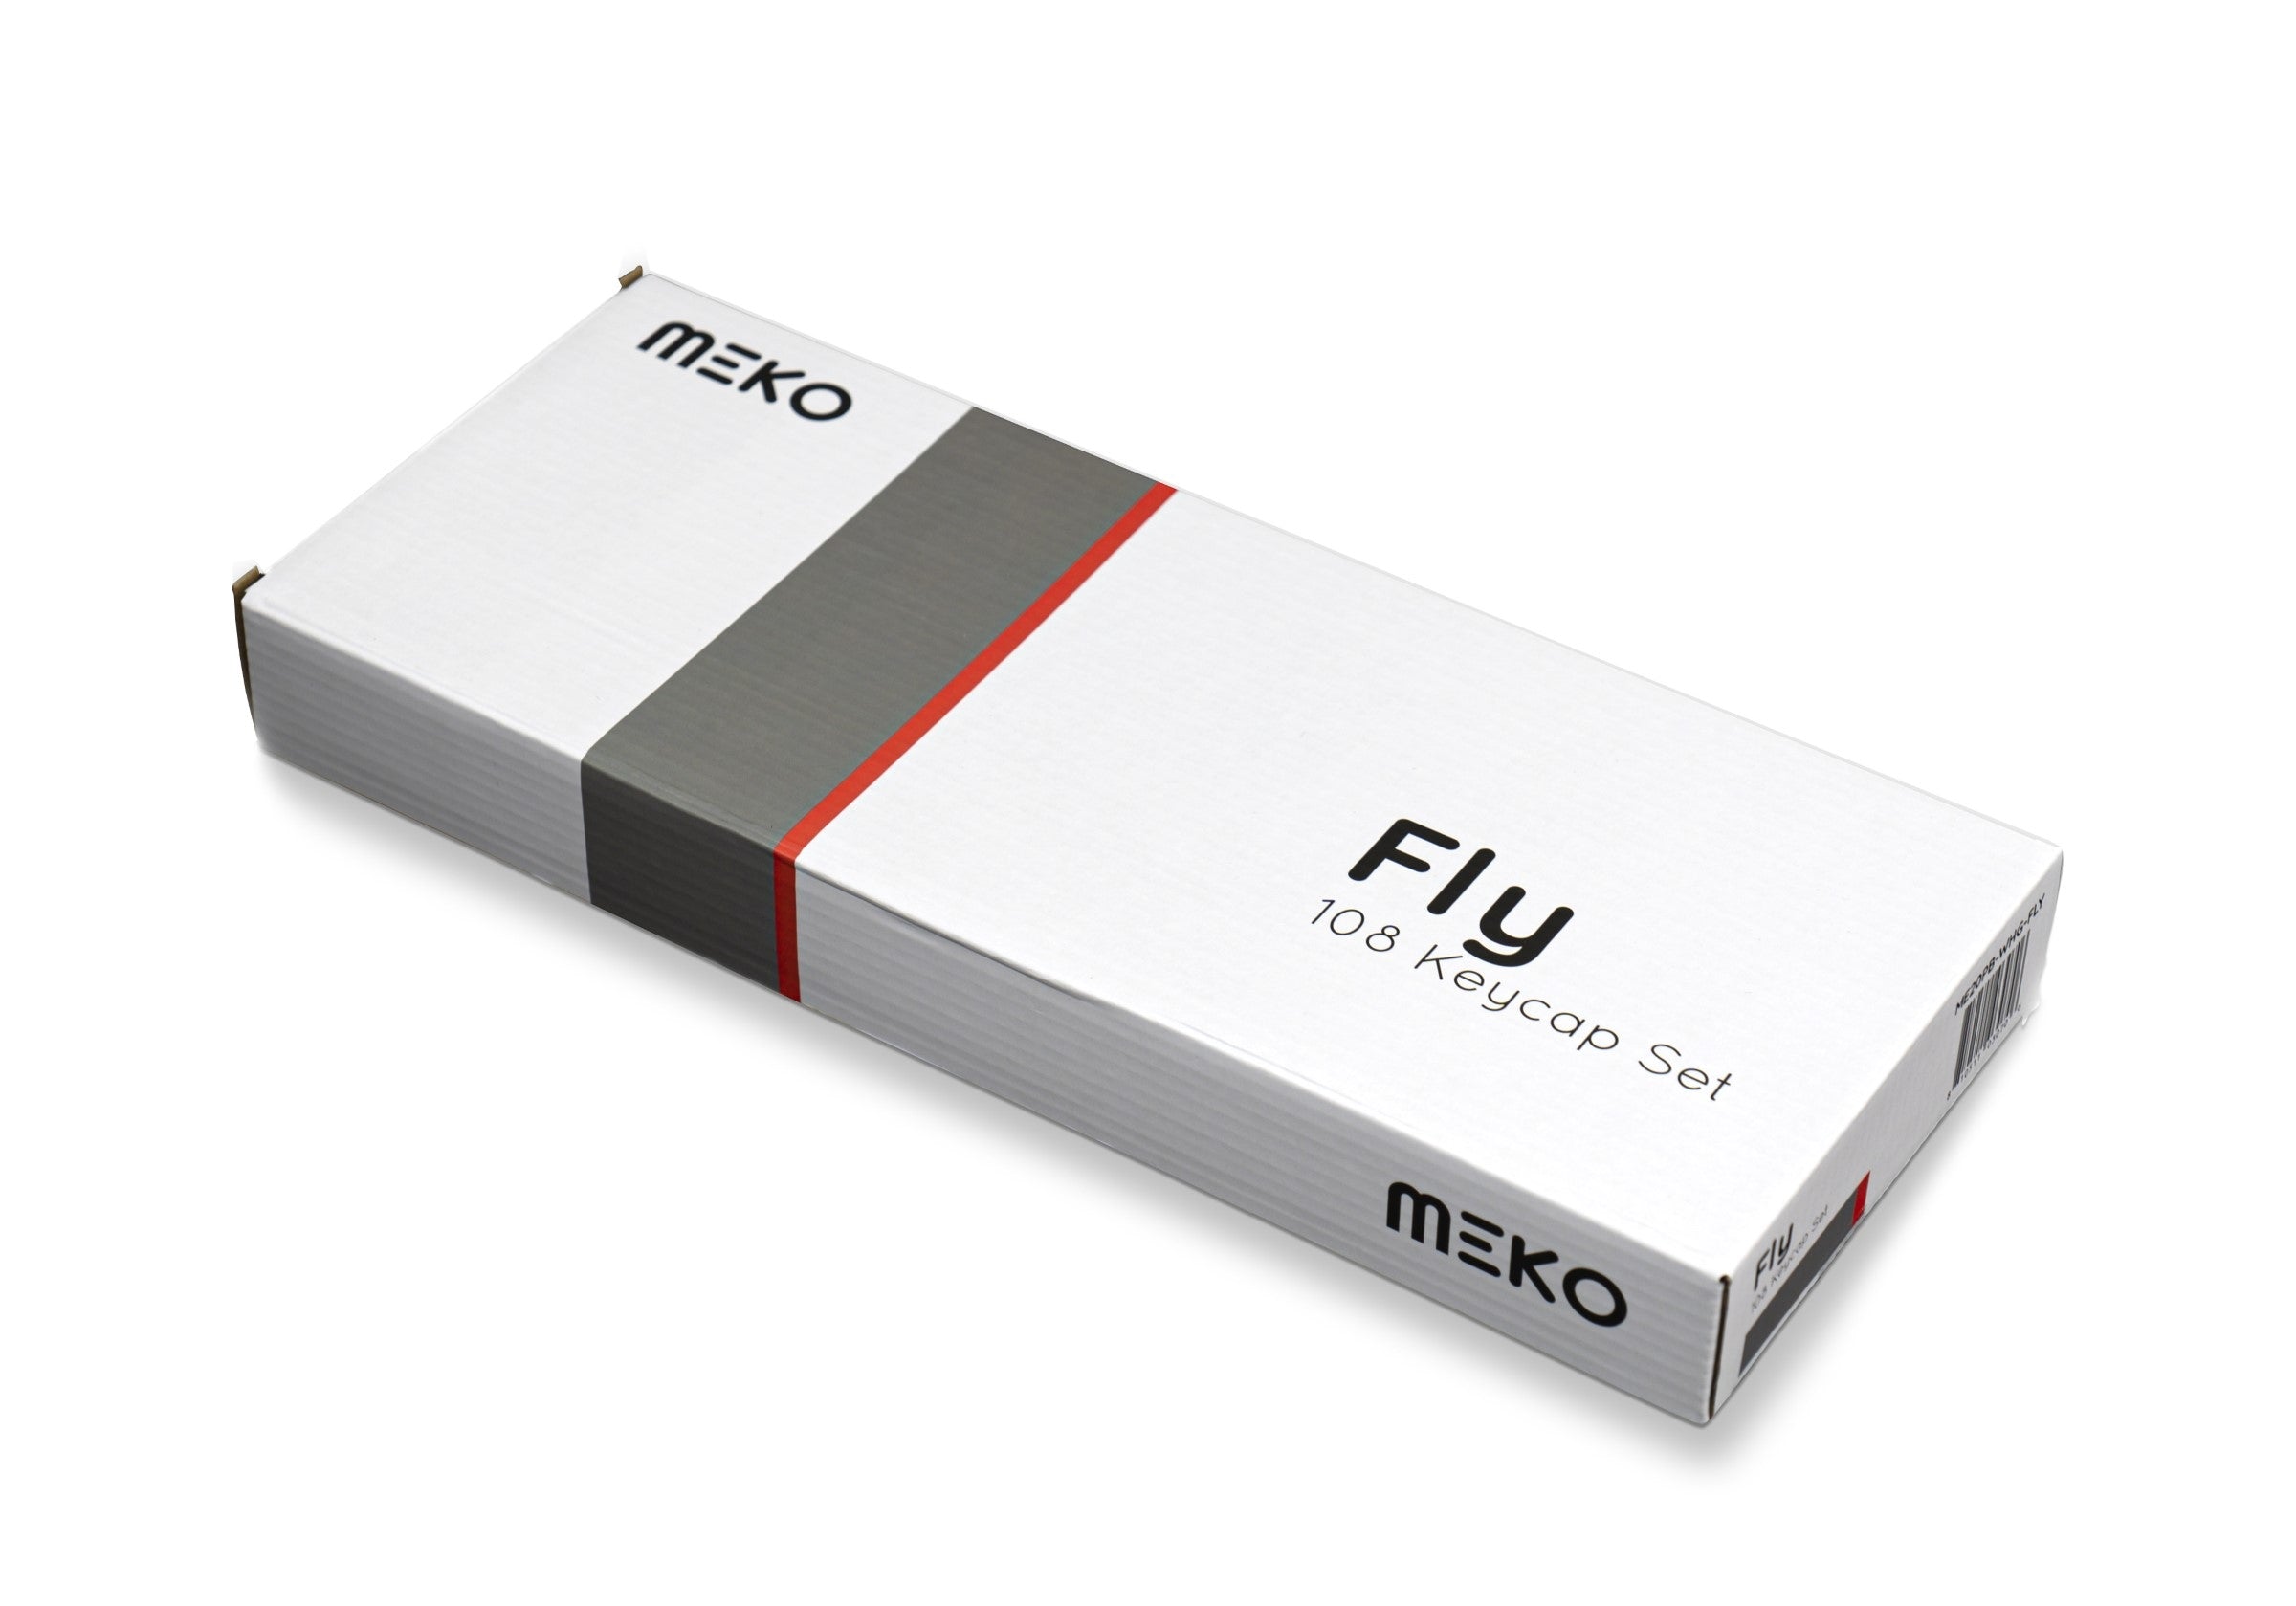 Meko Fly Laser Etched PBT Side Print Keycap Set MKDTRU431H |27381|